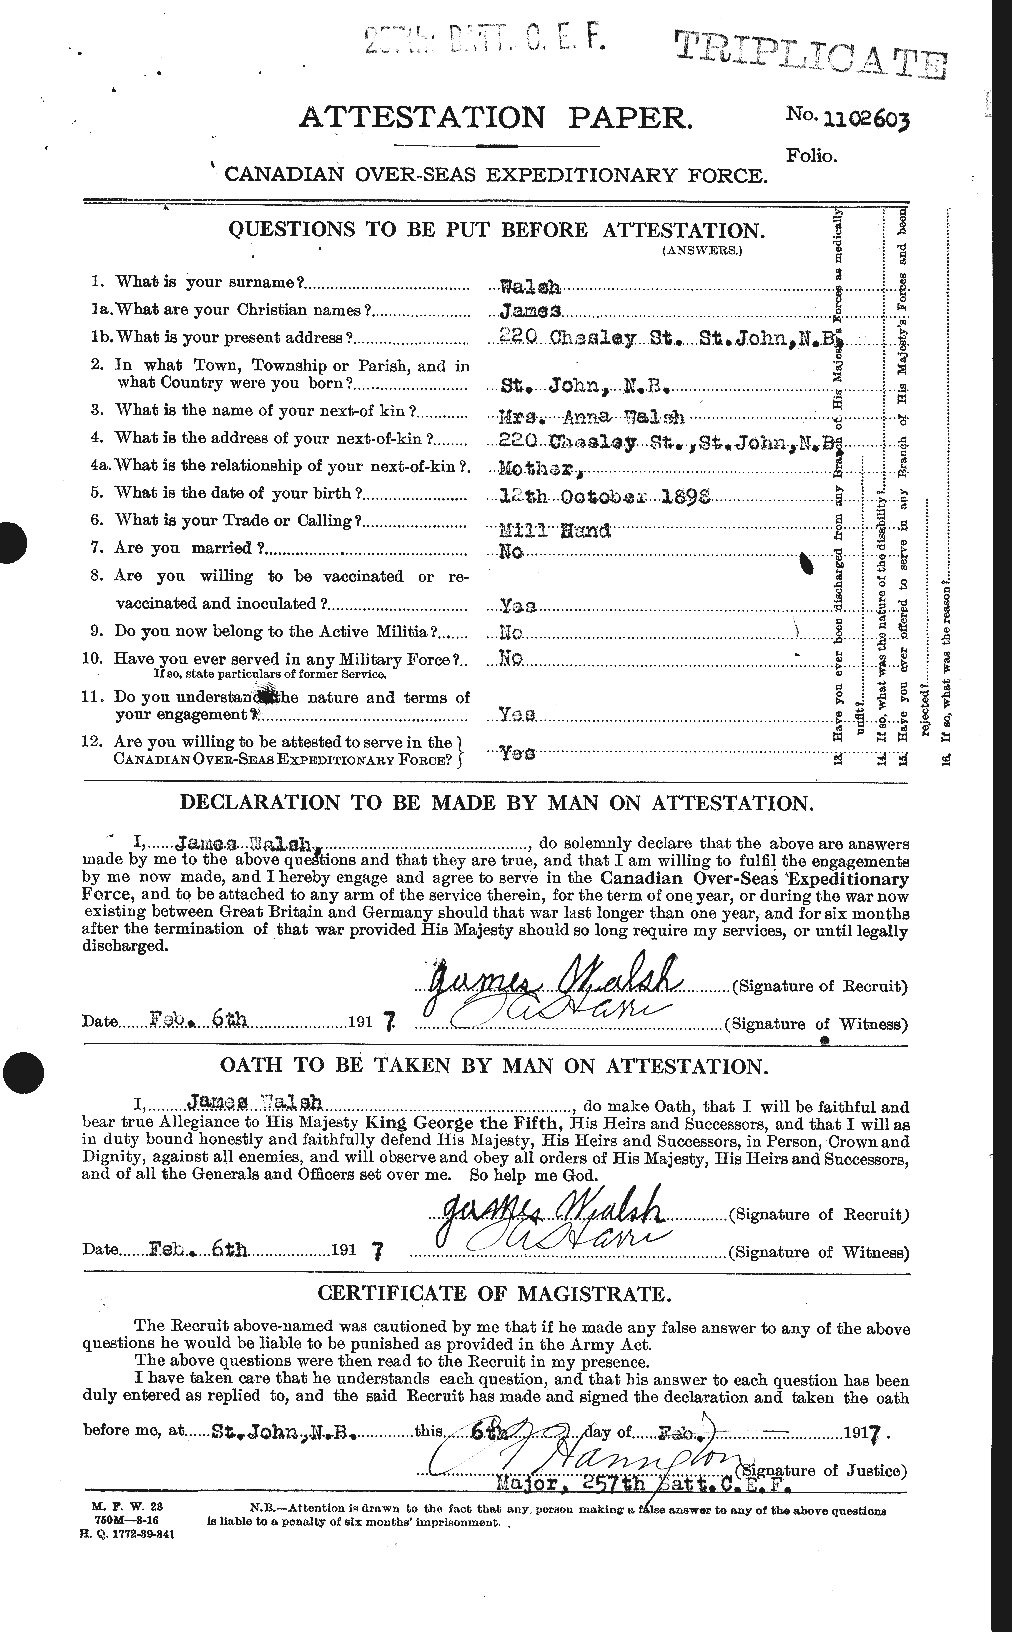 Dossiers du Personnel de la Première Guerre mondiale - CEC 653281a